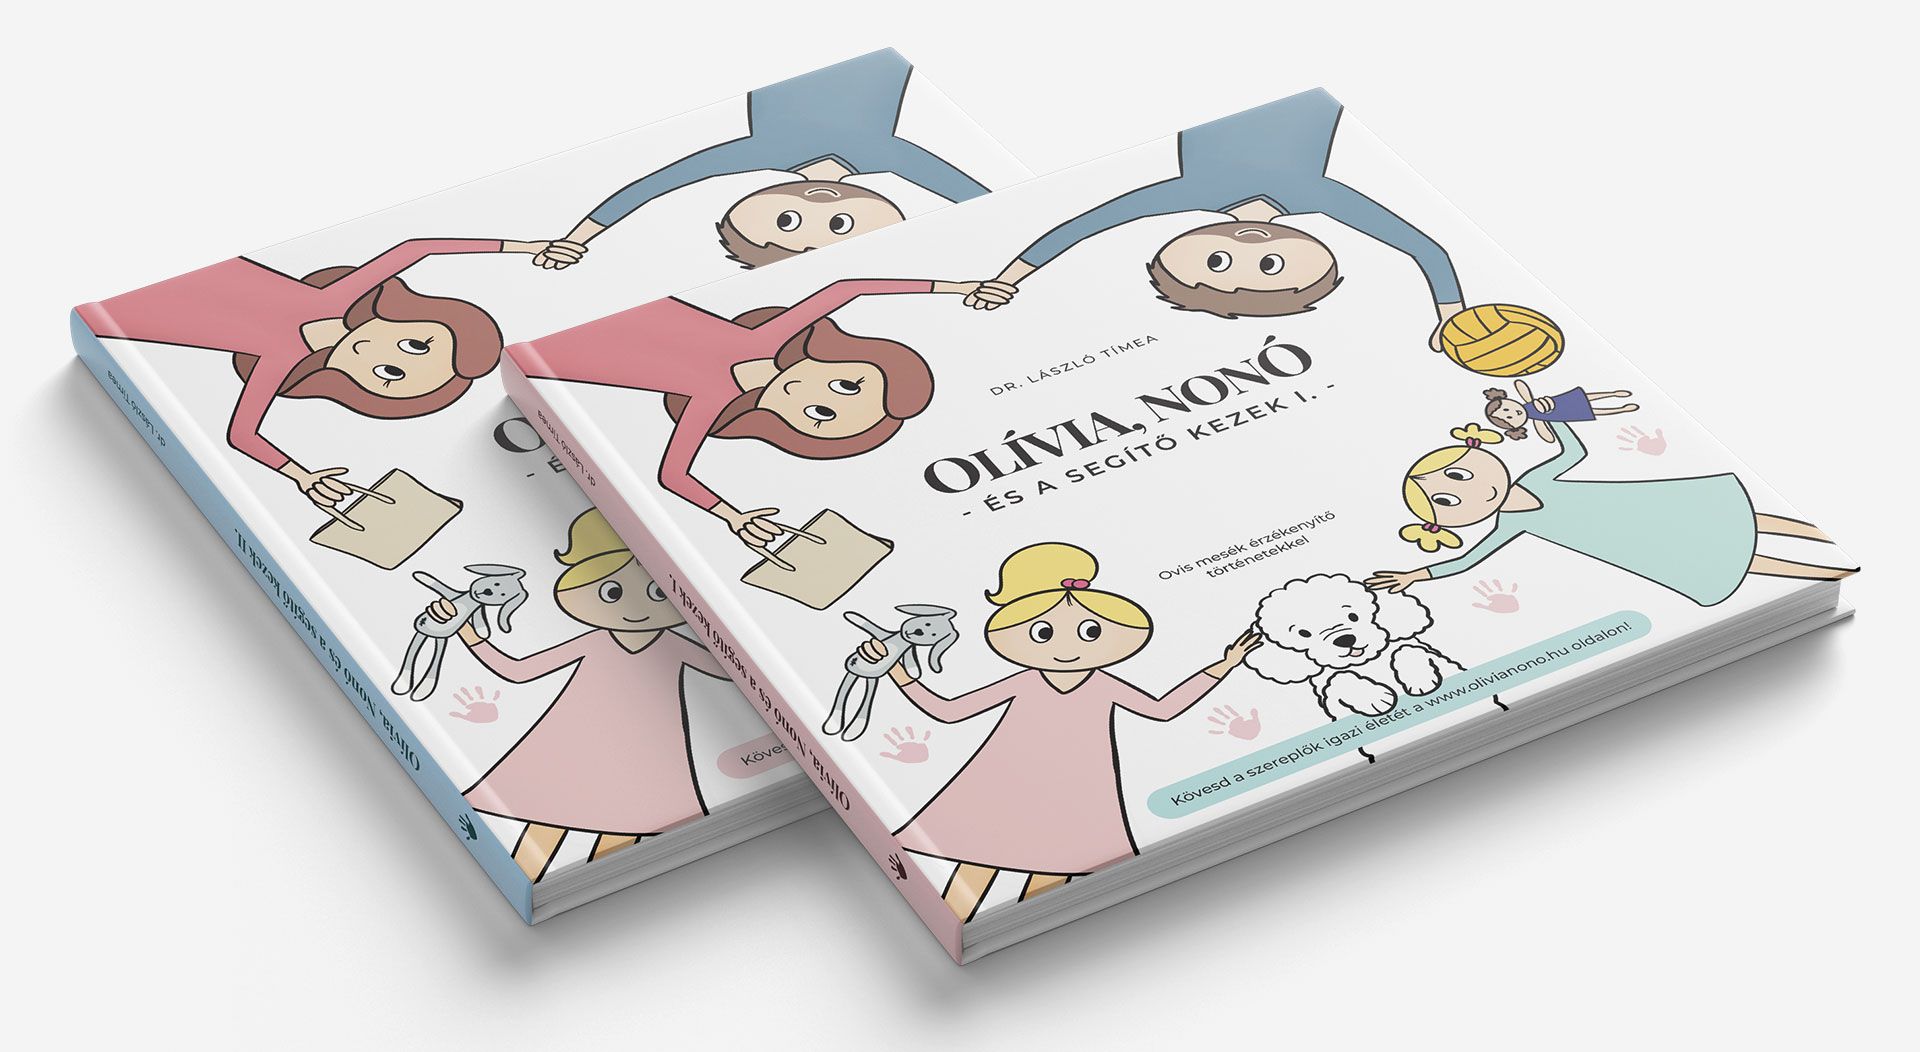 Olívia, Nonó - és a segítő kezek - I-II. Book Cover